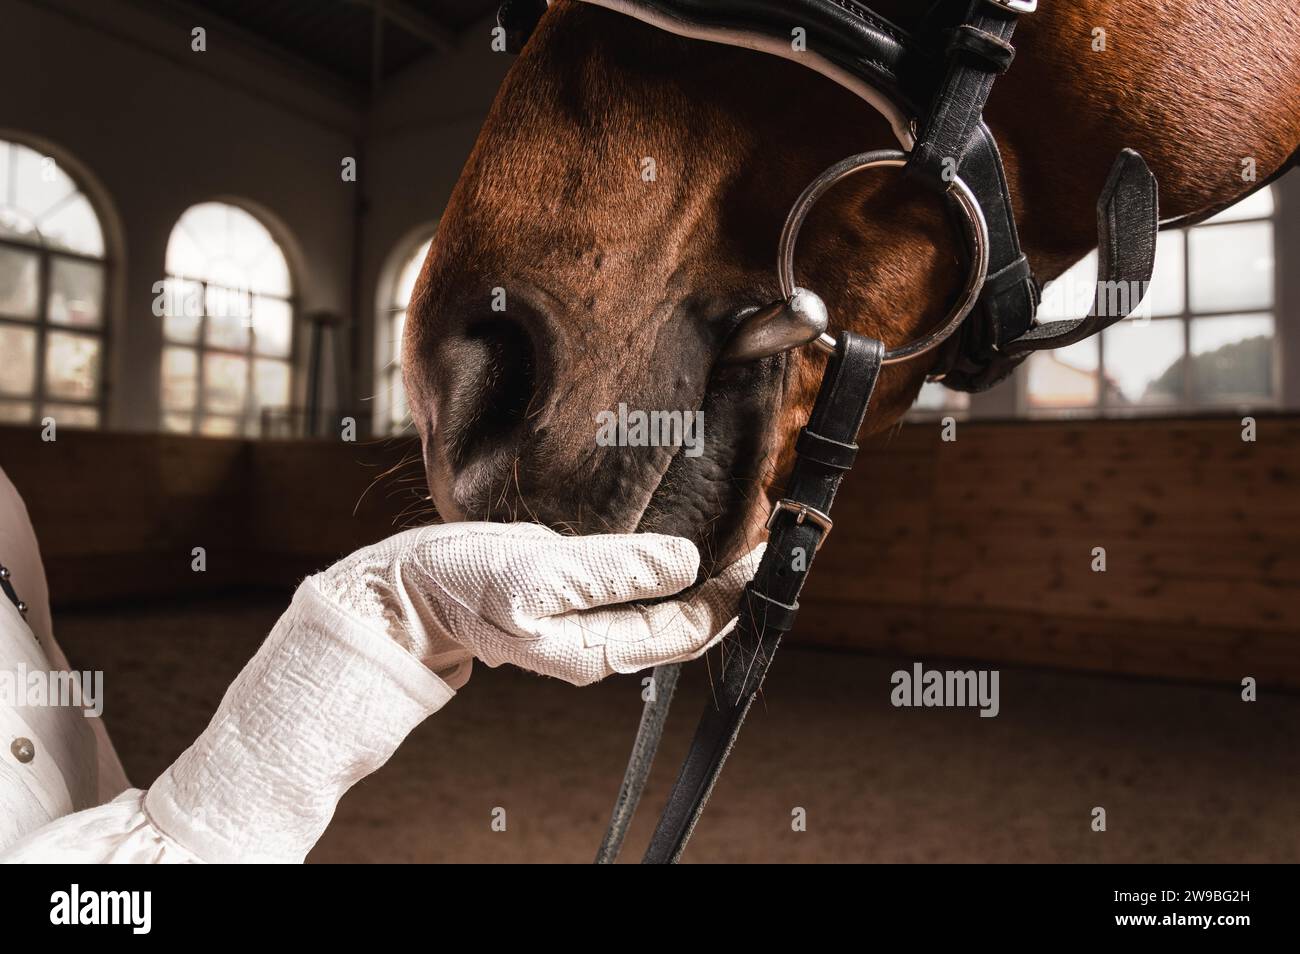 Bild der Hand eines Reiters im Handschuh. Der Jockey füttert das Pferd. Nahaufnahme Hochformat. Gemischte Medien Stockfoto